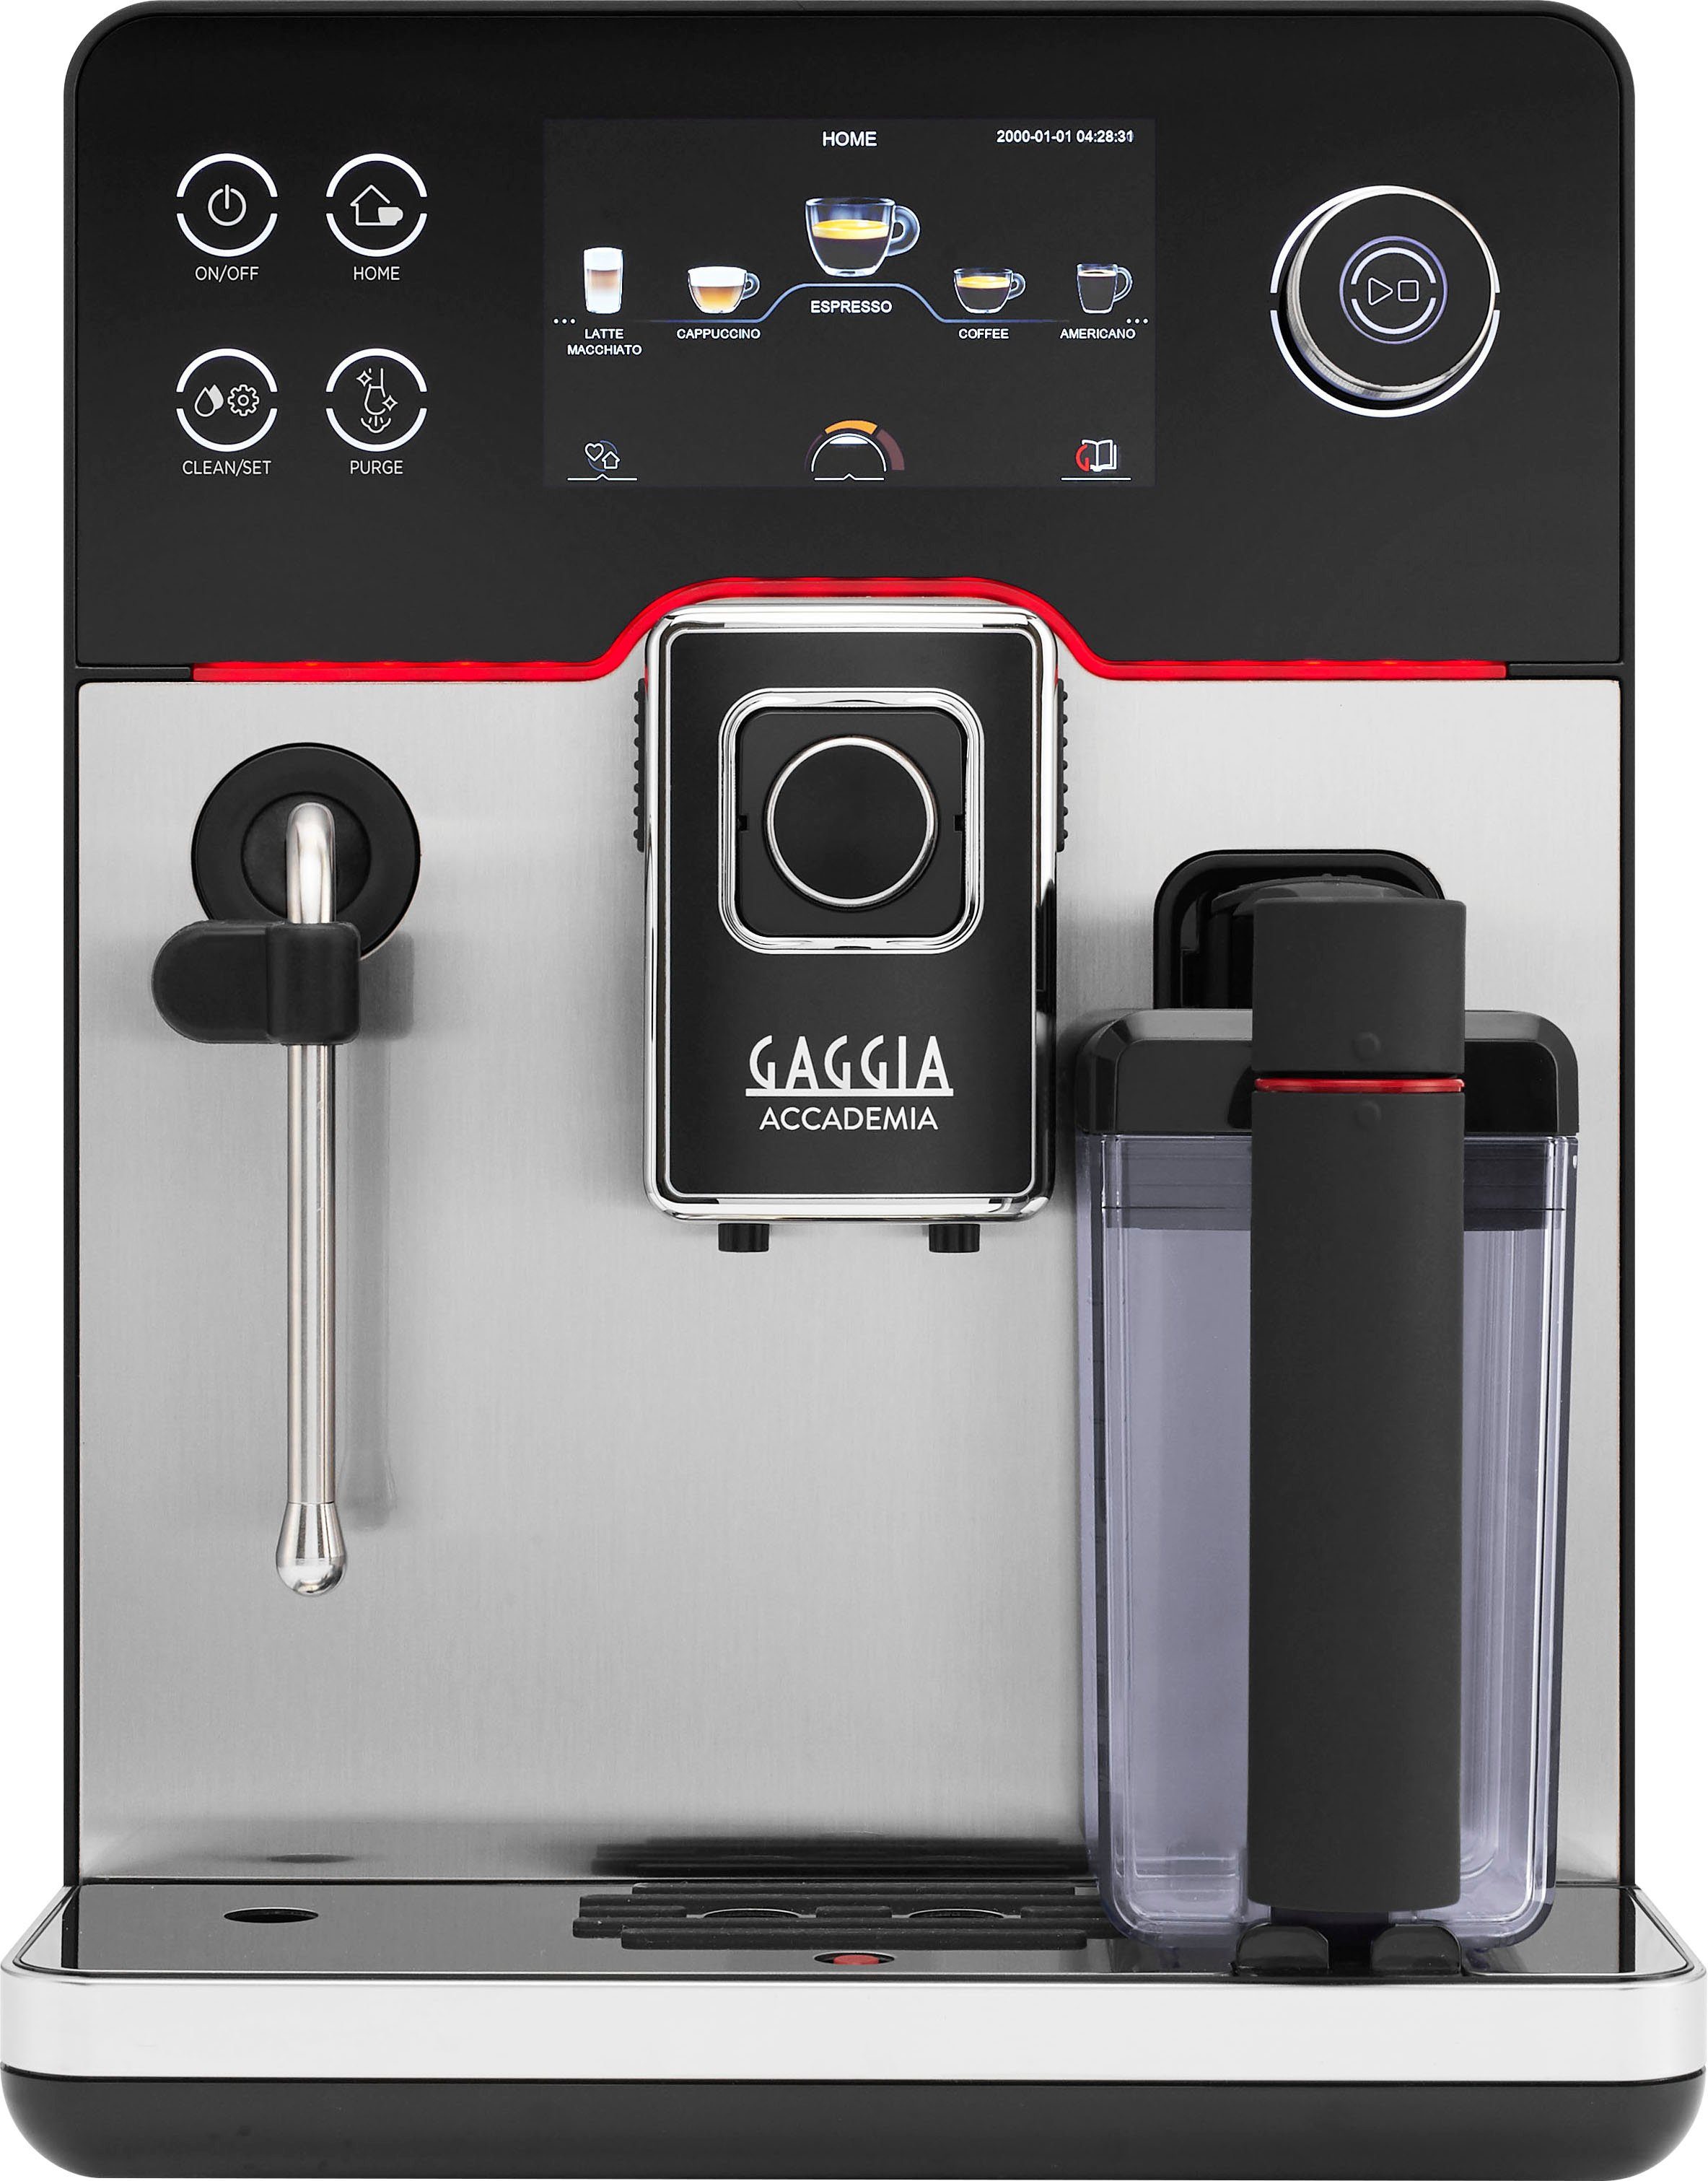 Gaggia Volautomatisch koffiezetapparaat Accademia Stainless Steel, van de uitvinder van espresso bar